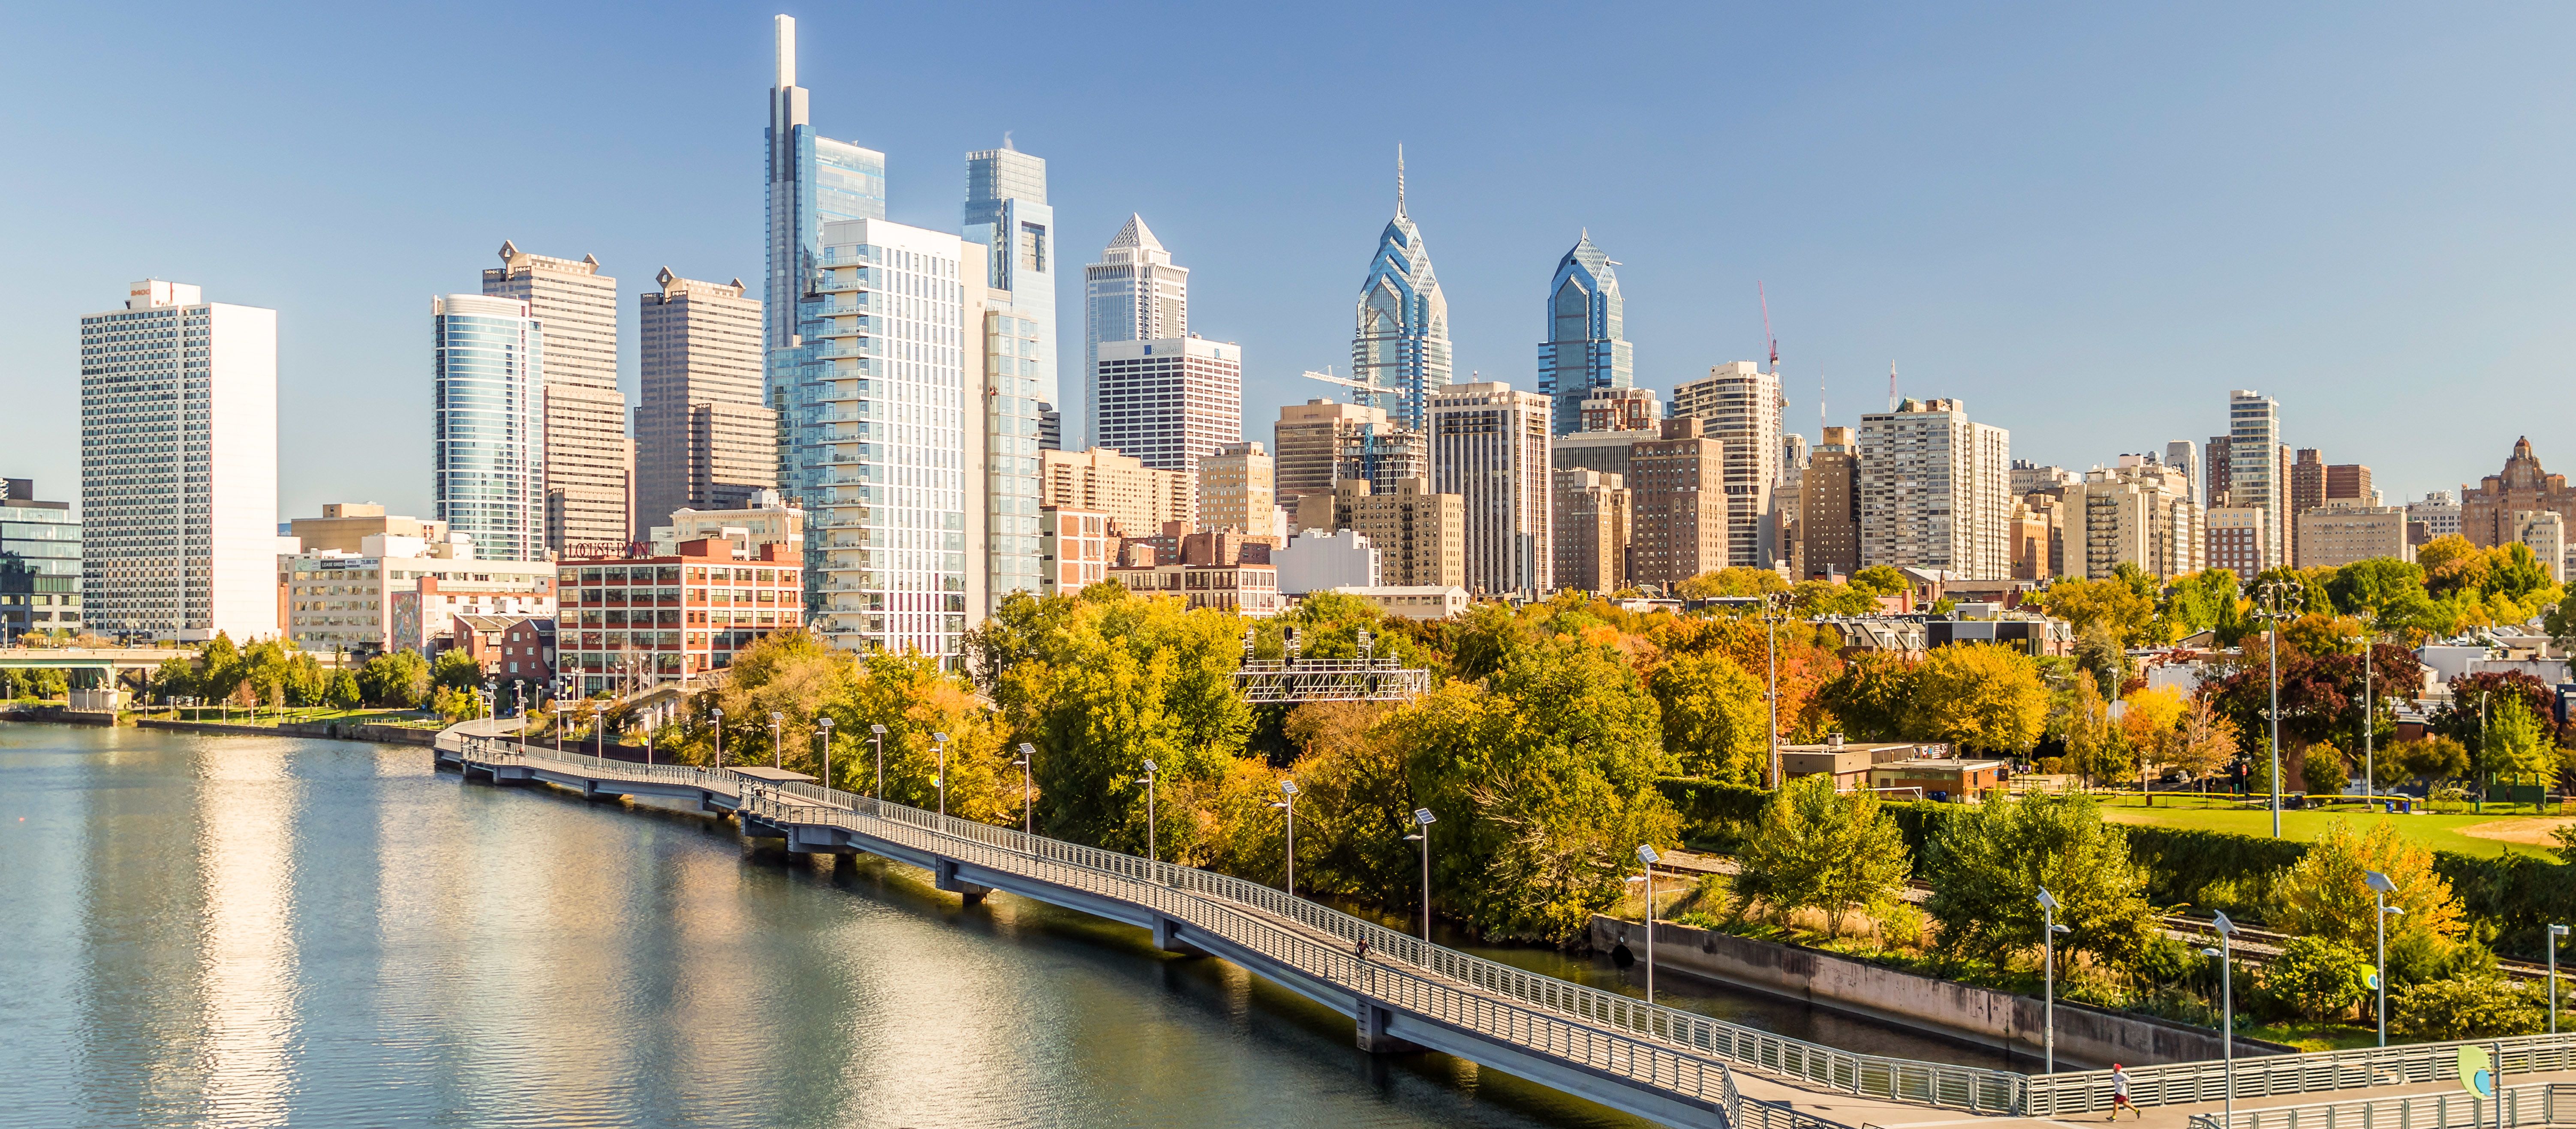 Die Skyline von Philadelphia in Pennsylvania